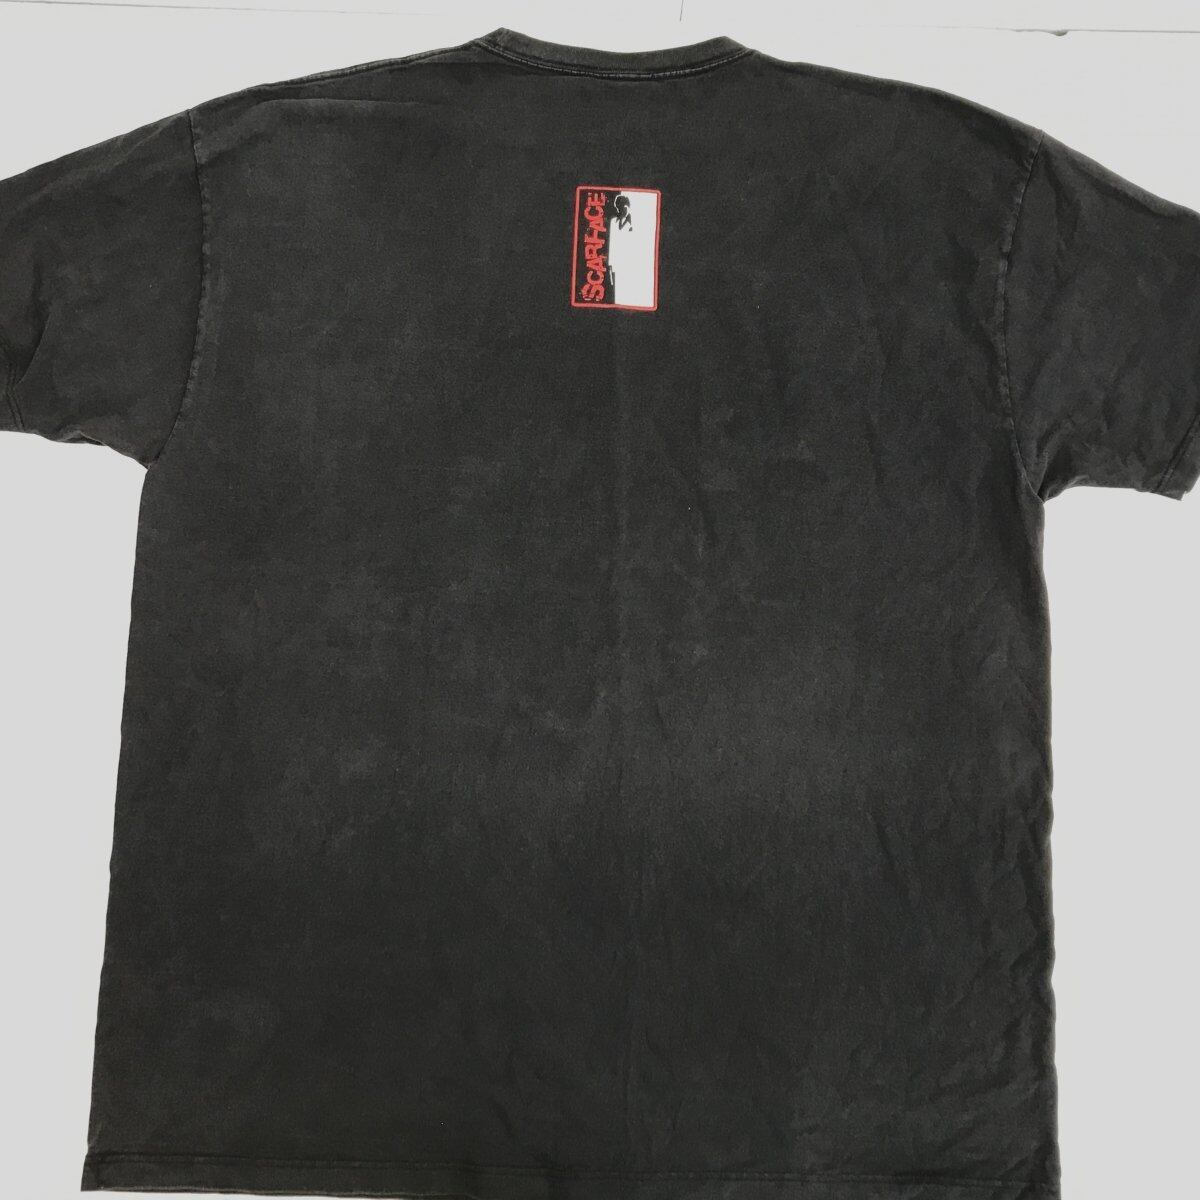 SCARFACE CLOTHING COMPANY スカーフェイス 90〜 00年代 CANADA製 フロッキー プリント 超 ビッグサイズ 映画  ムービー Tシャツ ブラック 3XL 以上 半袖